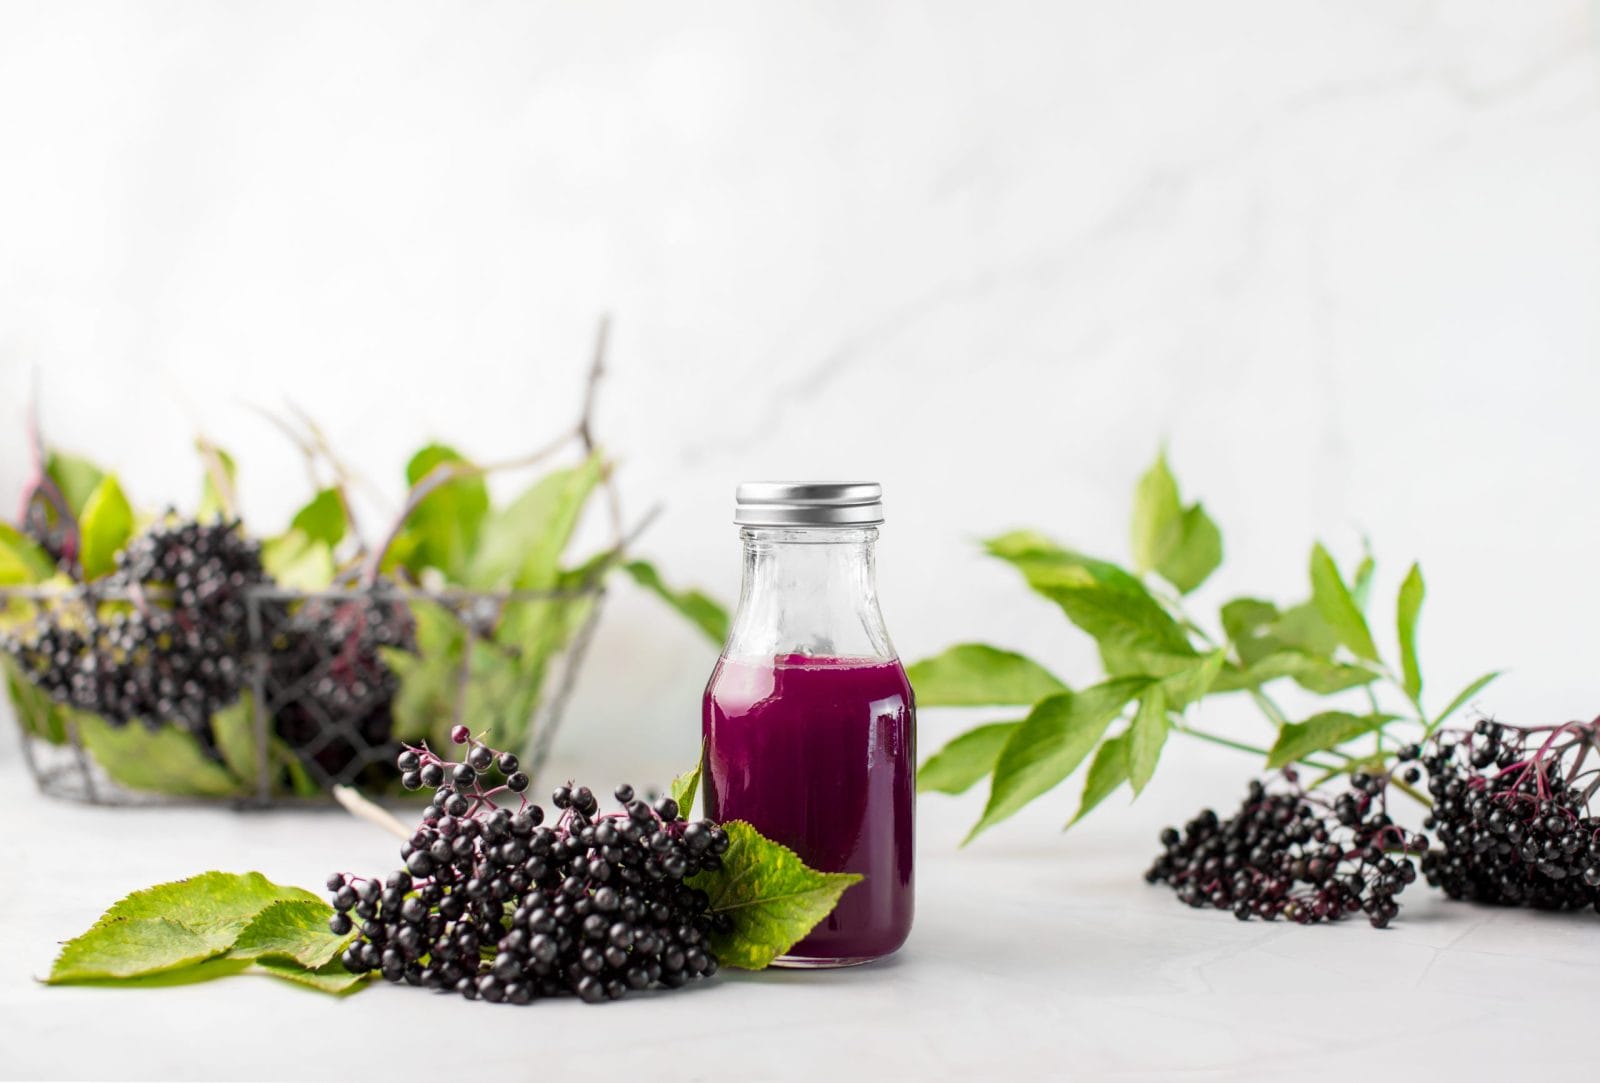 Elderberries with a glass of elderberry juice